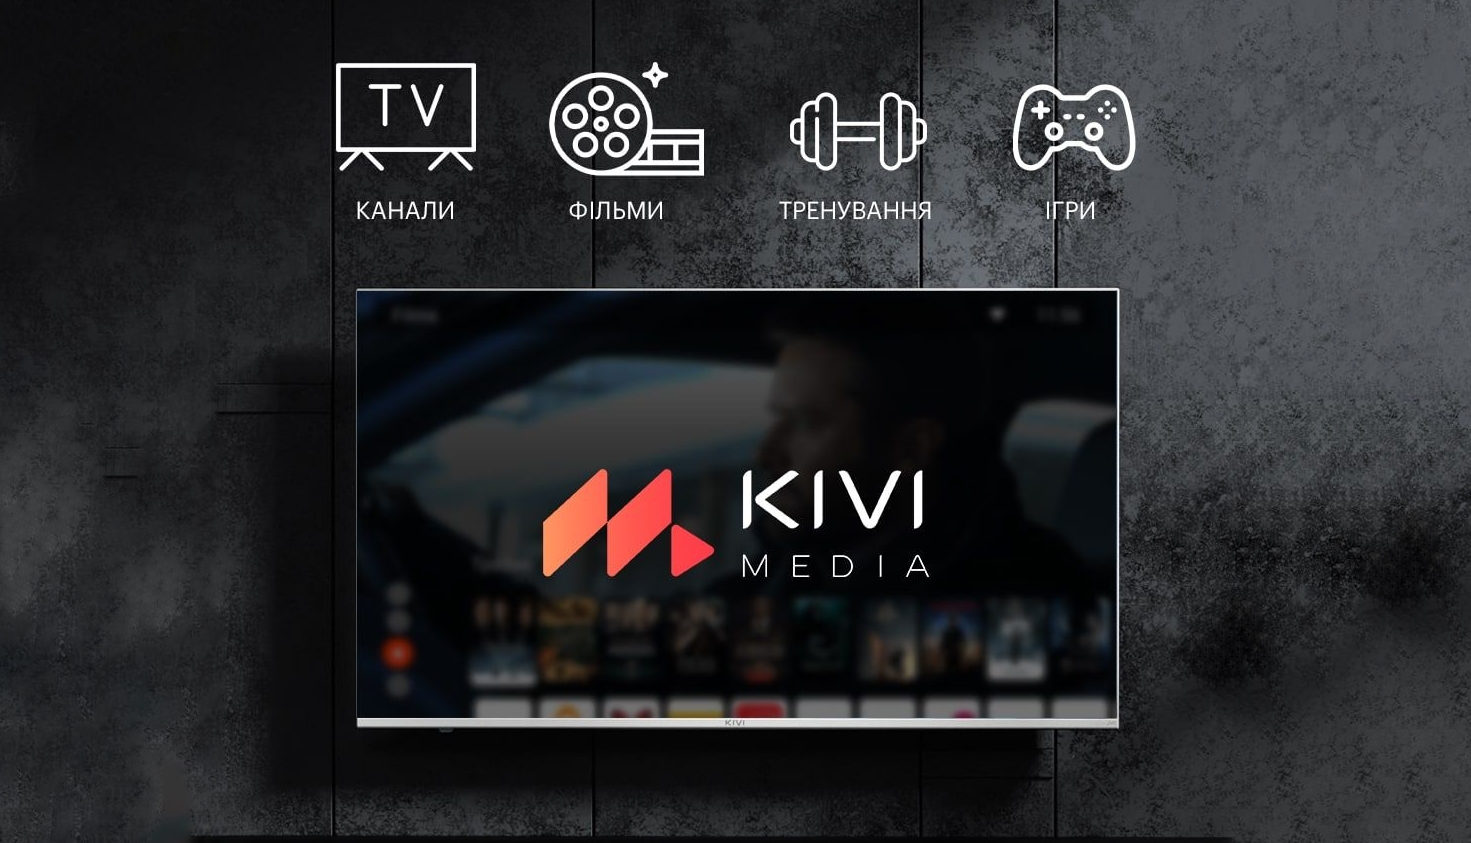 Застосунок KIVI MEDIA з безкоштовними іграми, каналами та фільмами тепер доступний для всіх Android-телевізорів в Україні.